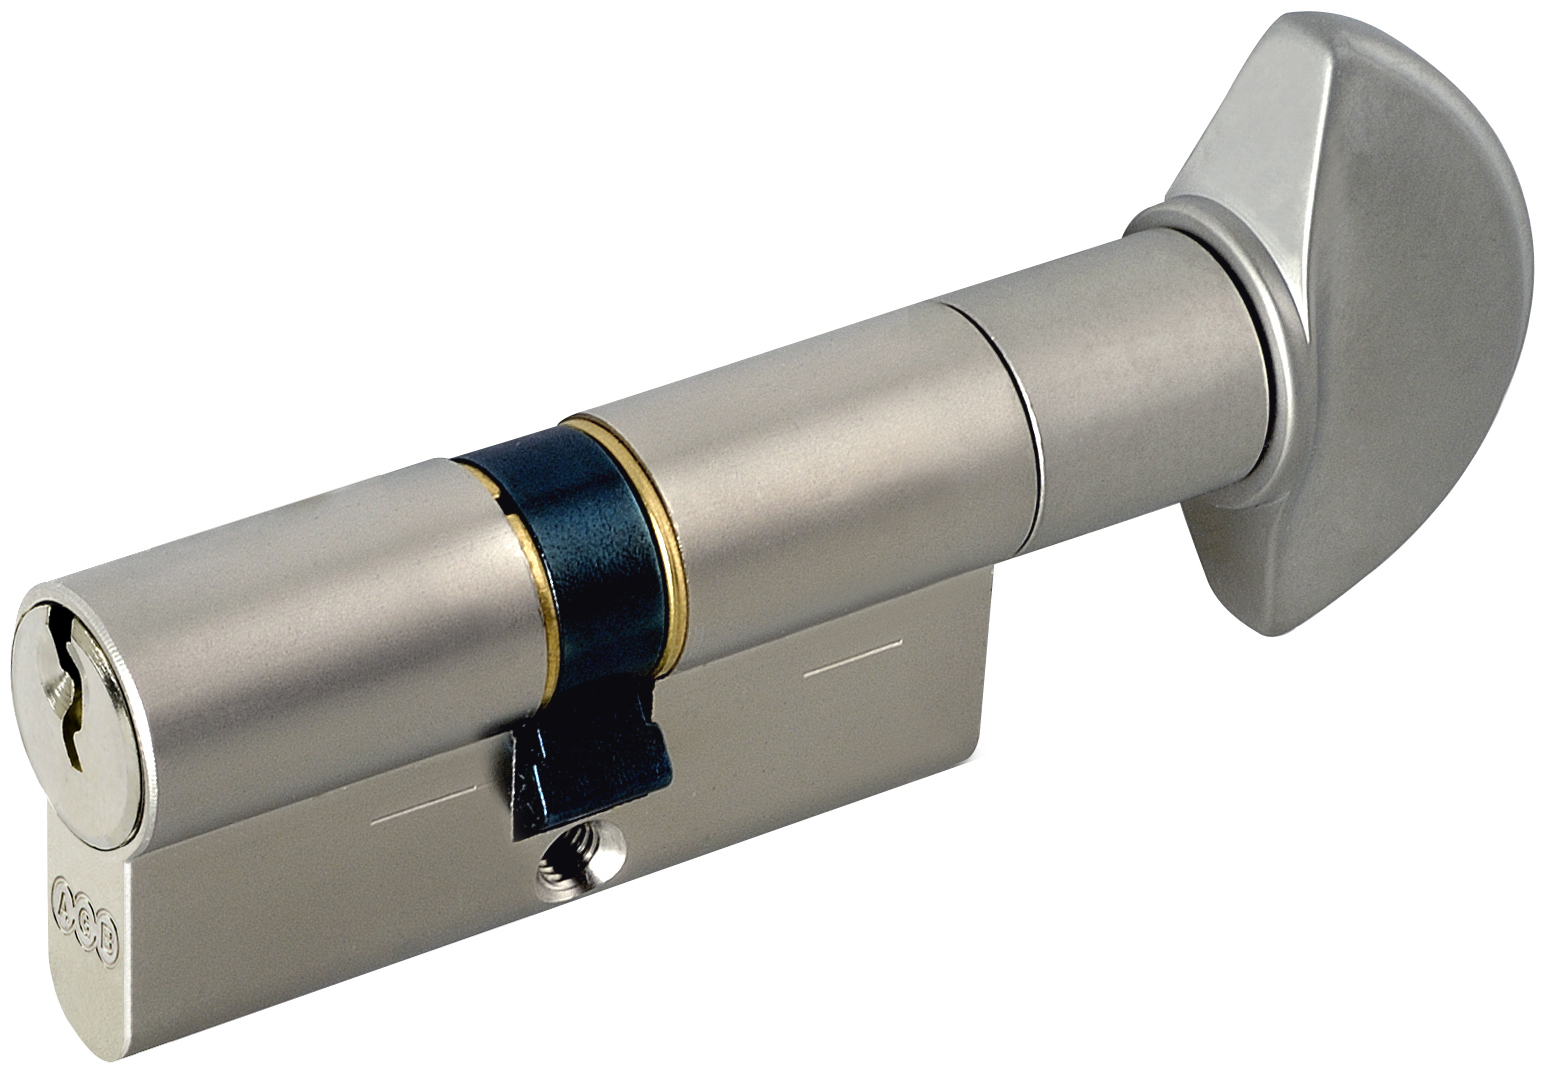 AGB -  Cilindro MOD. 600 frizionato anti bamping con chiave e pomolo - col. NICHELATO OPACO - lunghezza 70 - misura 25-10-35